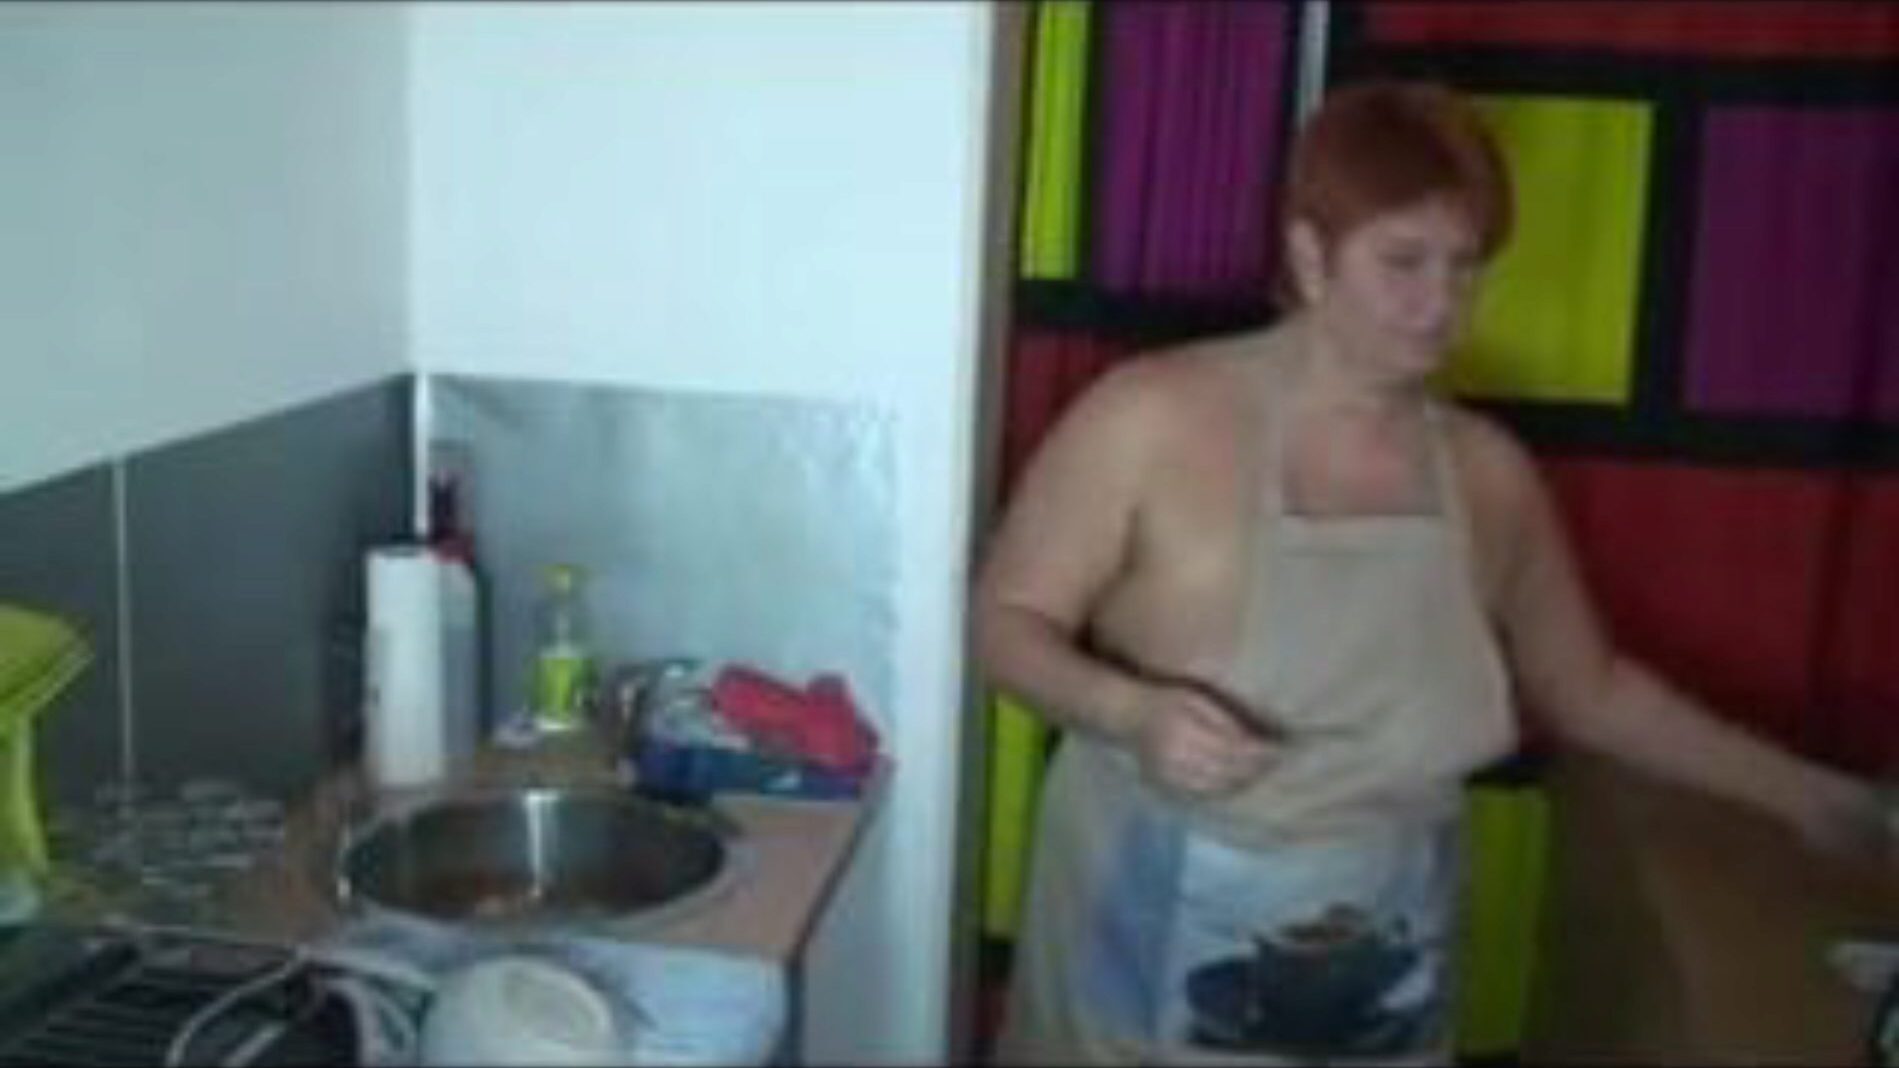 ao lavar pratos na cozinha, assistir a pornografia gratuita 55: xhamster ao lavar pratos na cozinha clipe no xhamster, o site gigante de sexo com toneladas de vídeos pornôs alemães mais quentes e com som